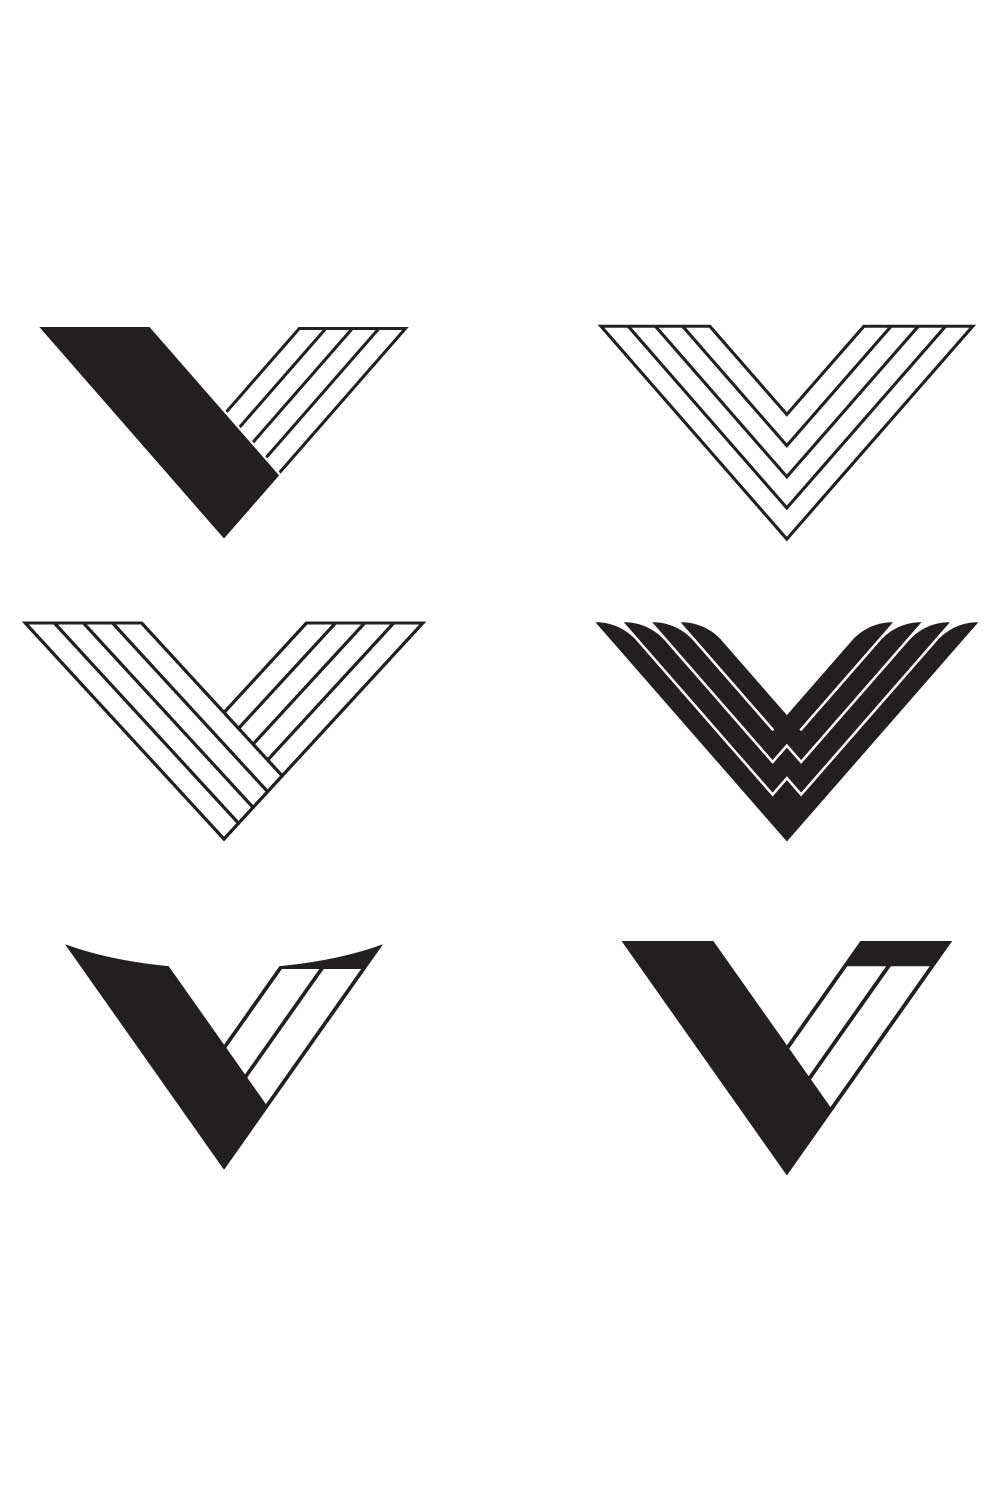 Creative V Letter Logo Bundle pinterest image.